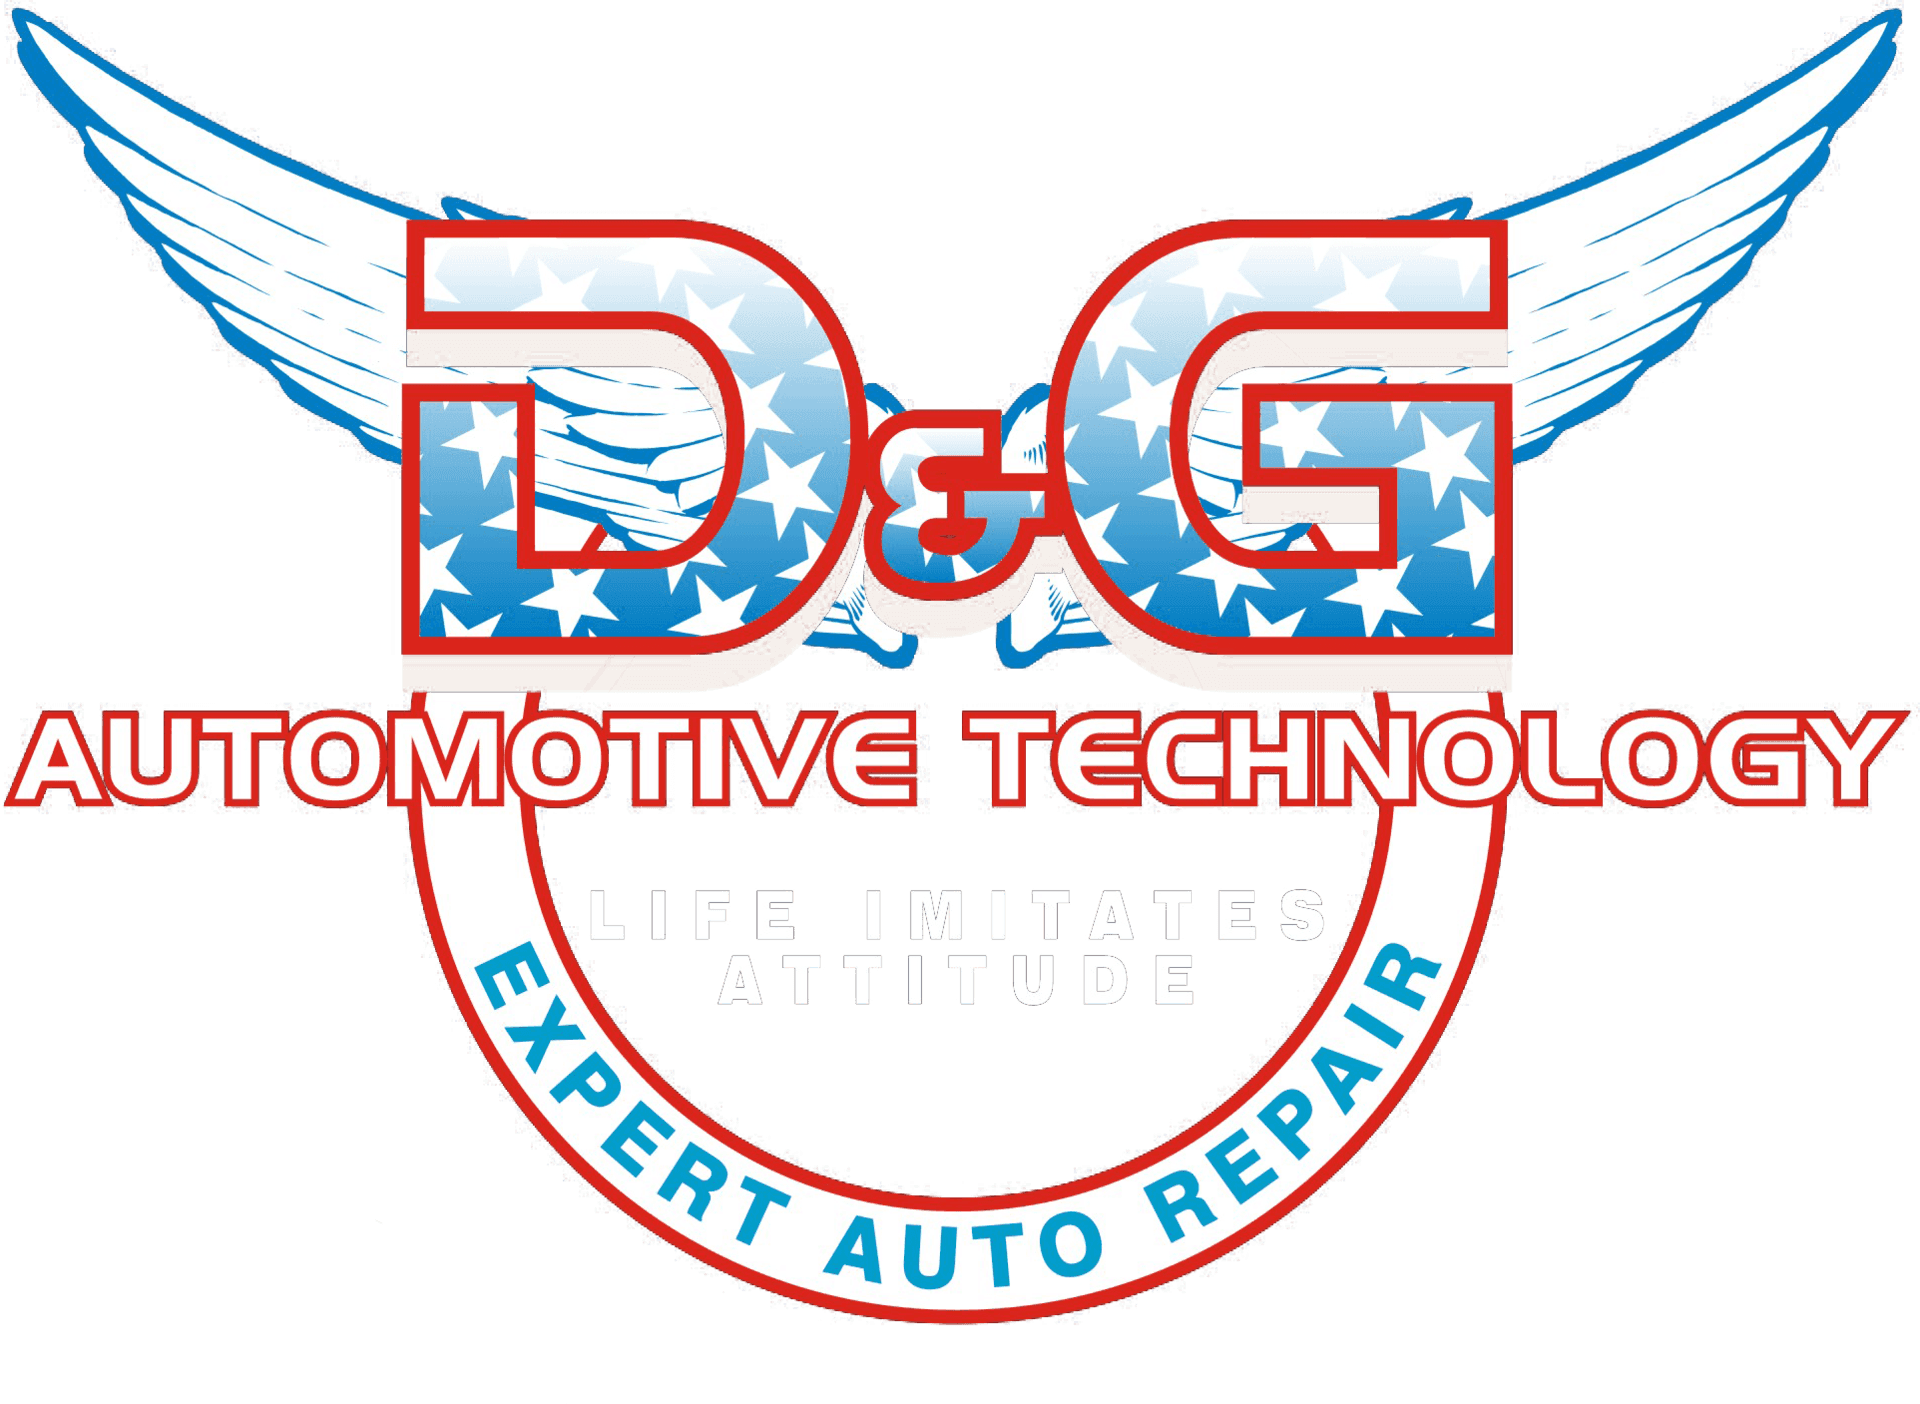 Dand G Logo - Contact D & G Automotive Technology Hempstead 516 292 9276